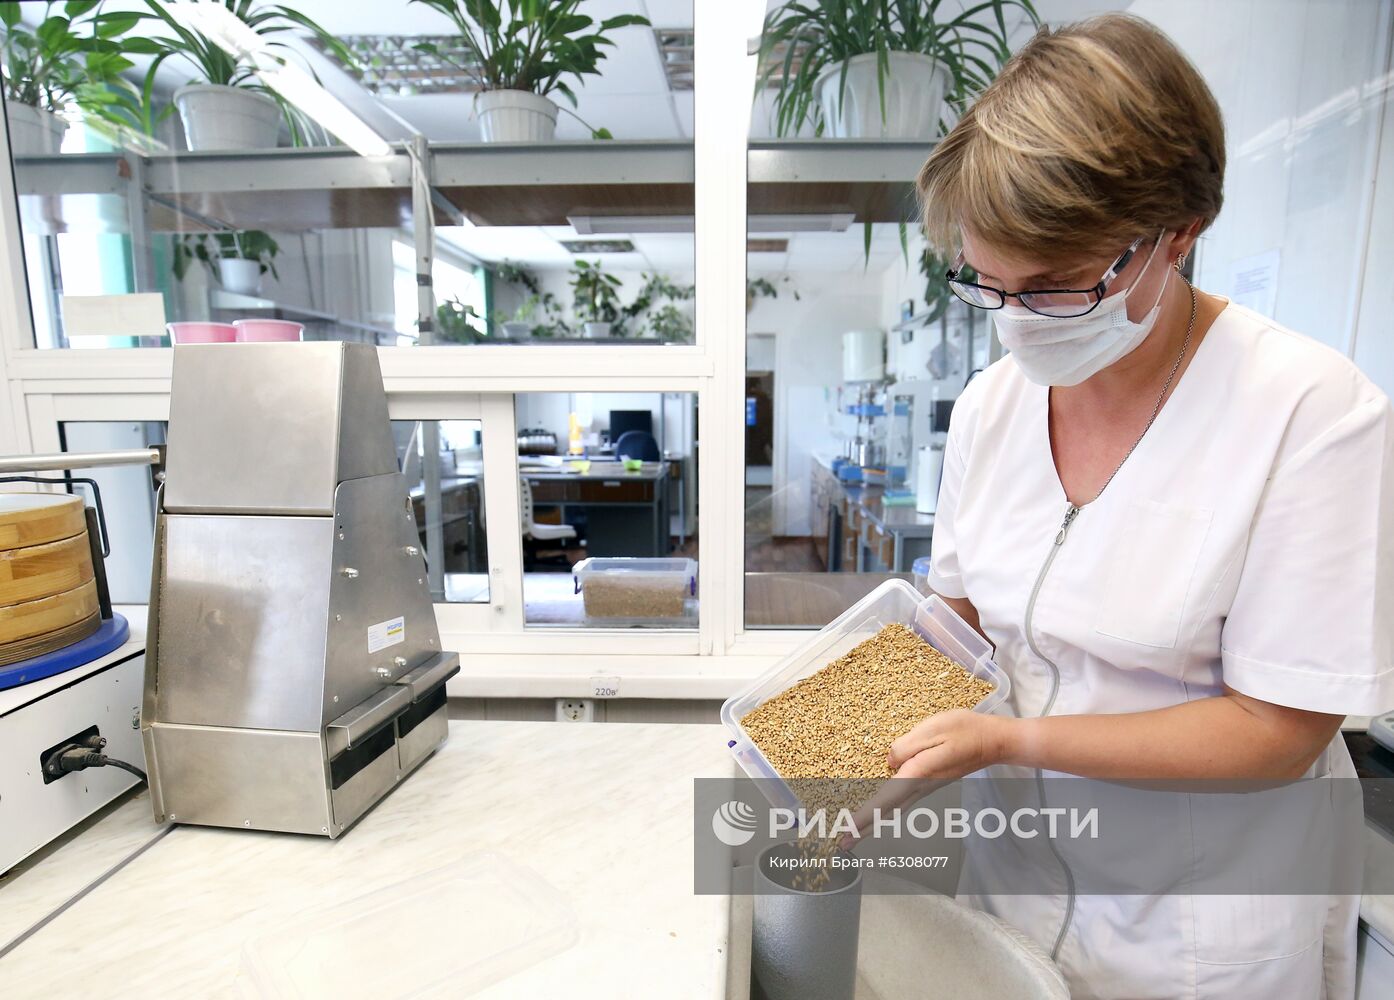 Волгоградские аграрии увеличивают отгрузку зерна на экспорт Волгоградские аграрии увеличивают отгрузку зерна на экспорт